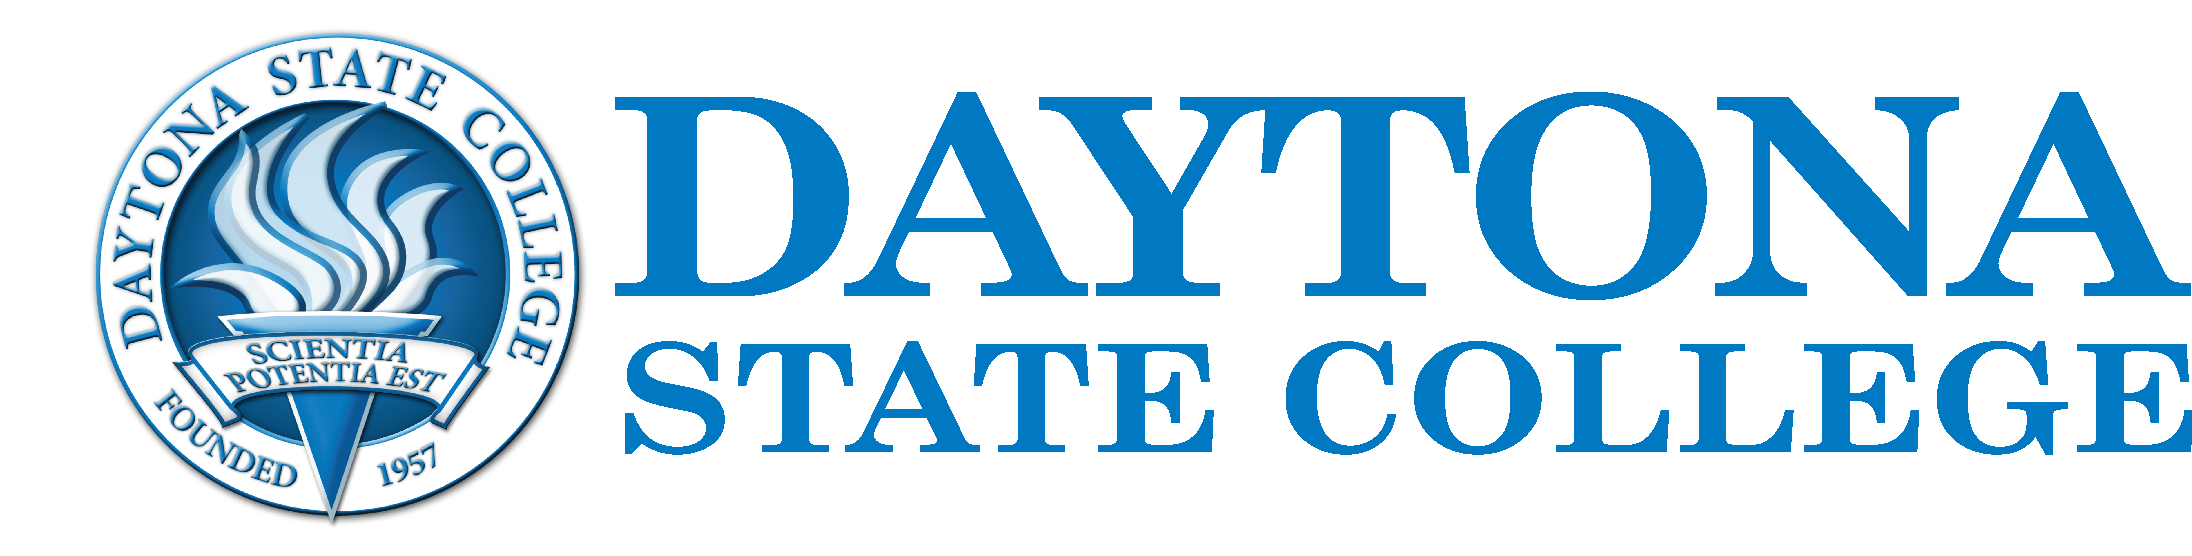 Daytona State College - NP-4 Nursing Kit